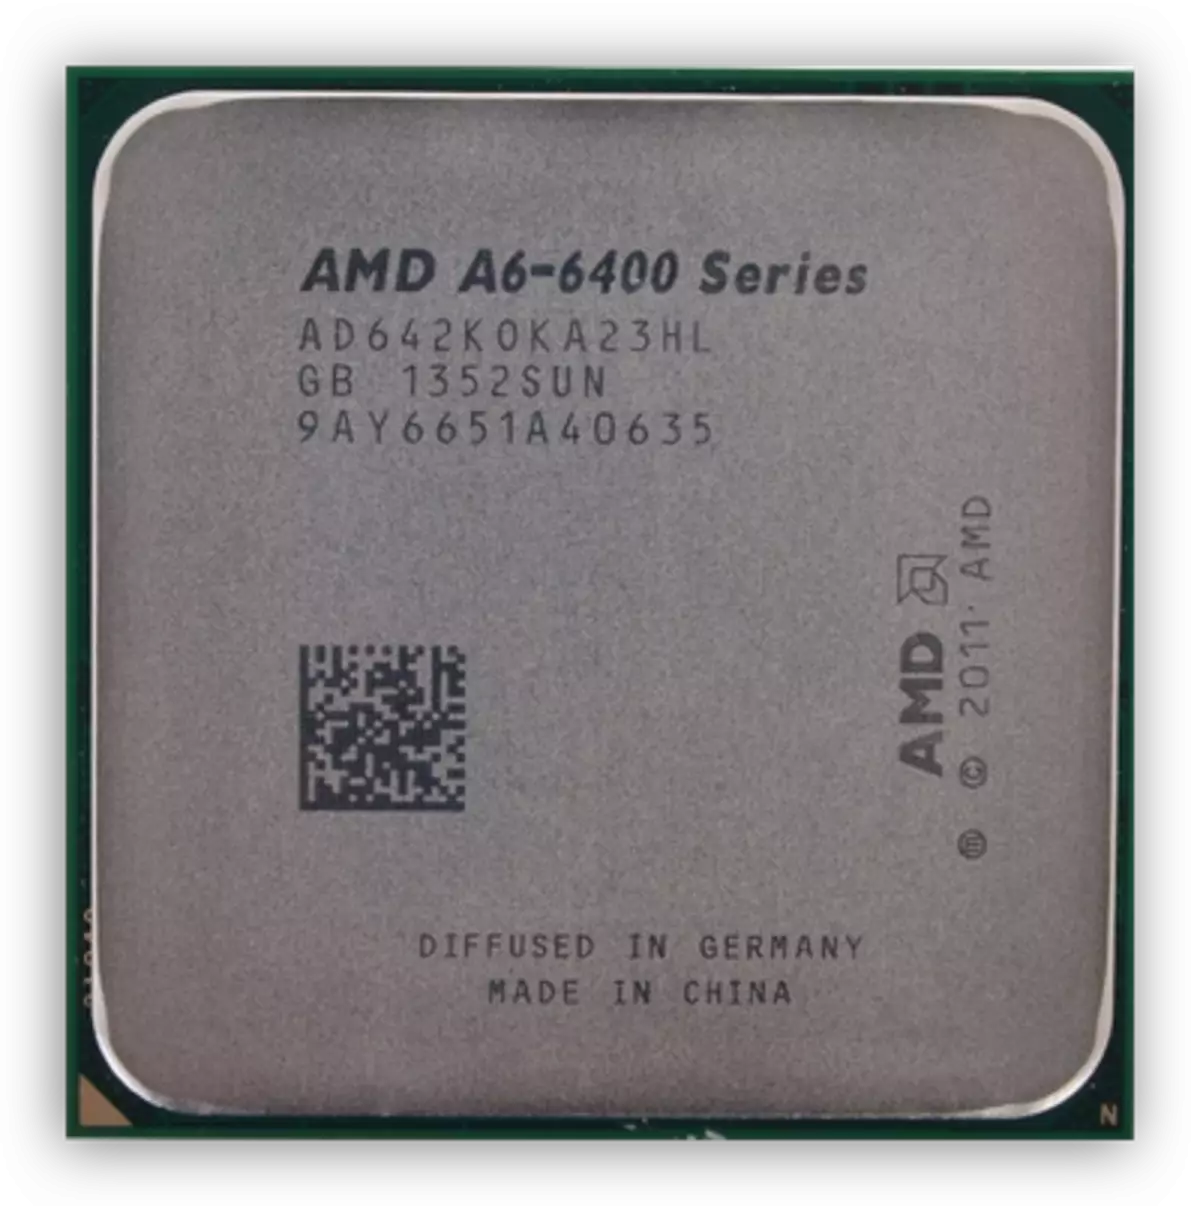 रिचलैंड आर्किटेक्चर पर एएमडी ए 6 6400 के प्रोसेसर